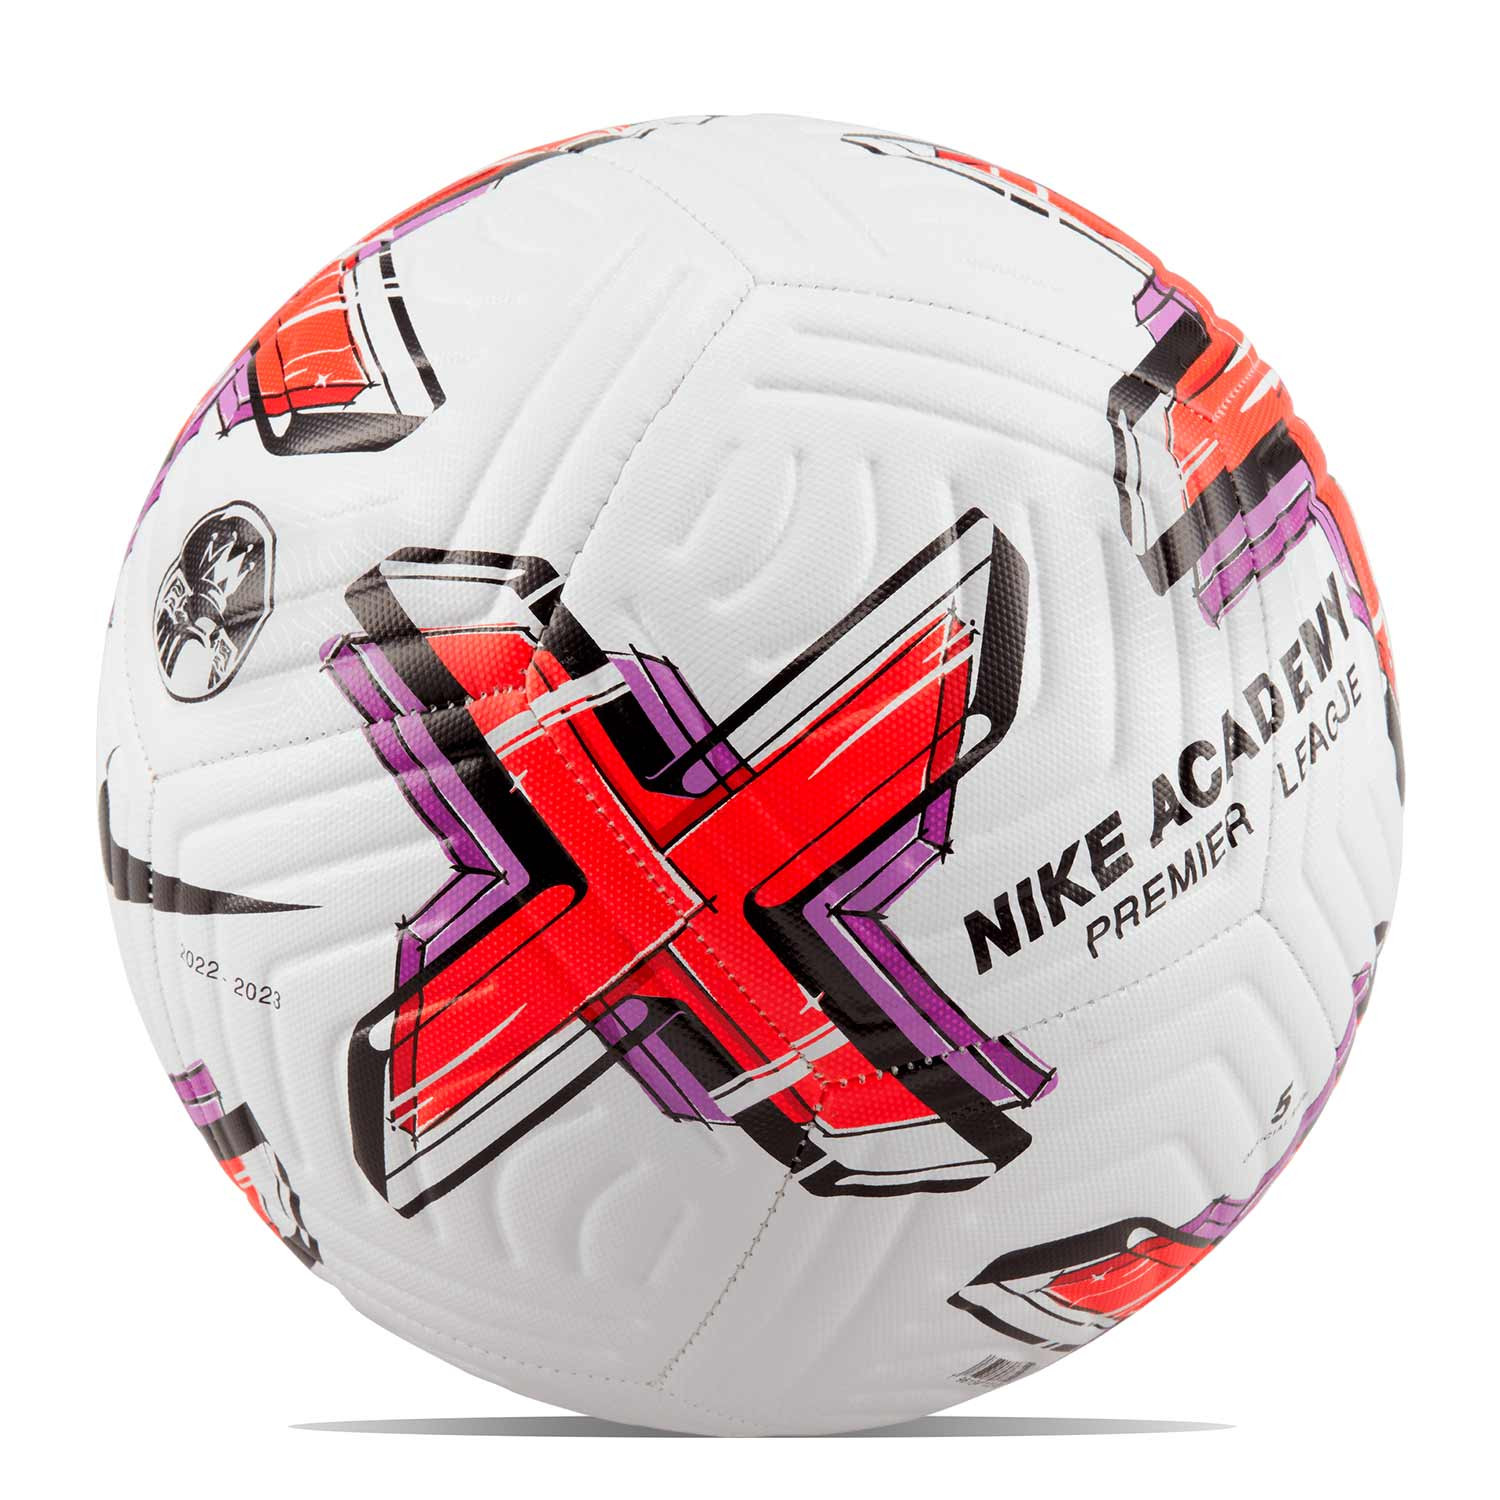 Balón Nike Premier League Academy 2023 talla 4 blanco